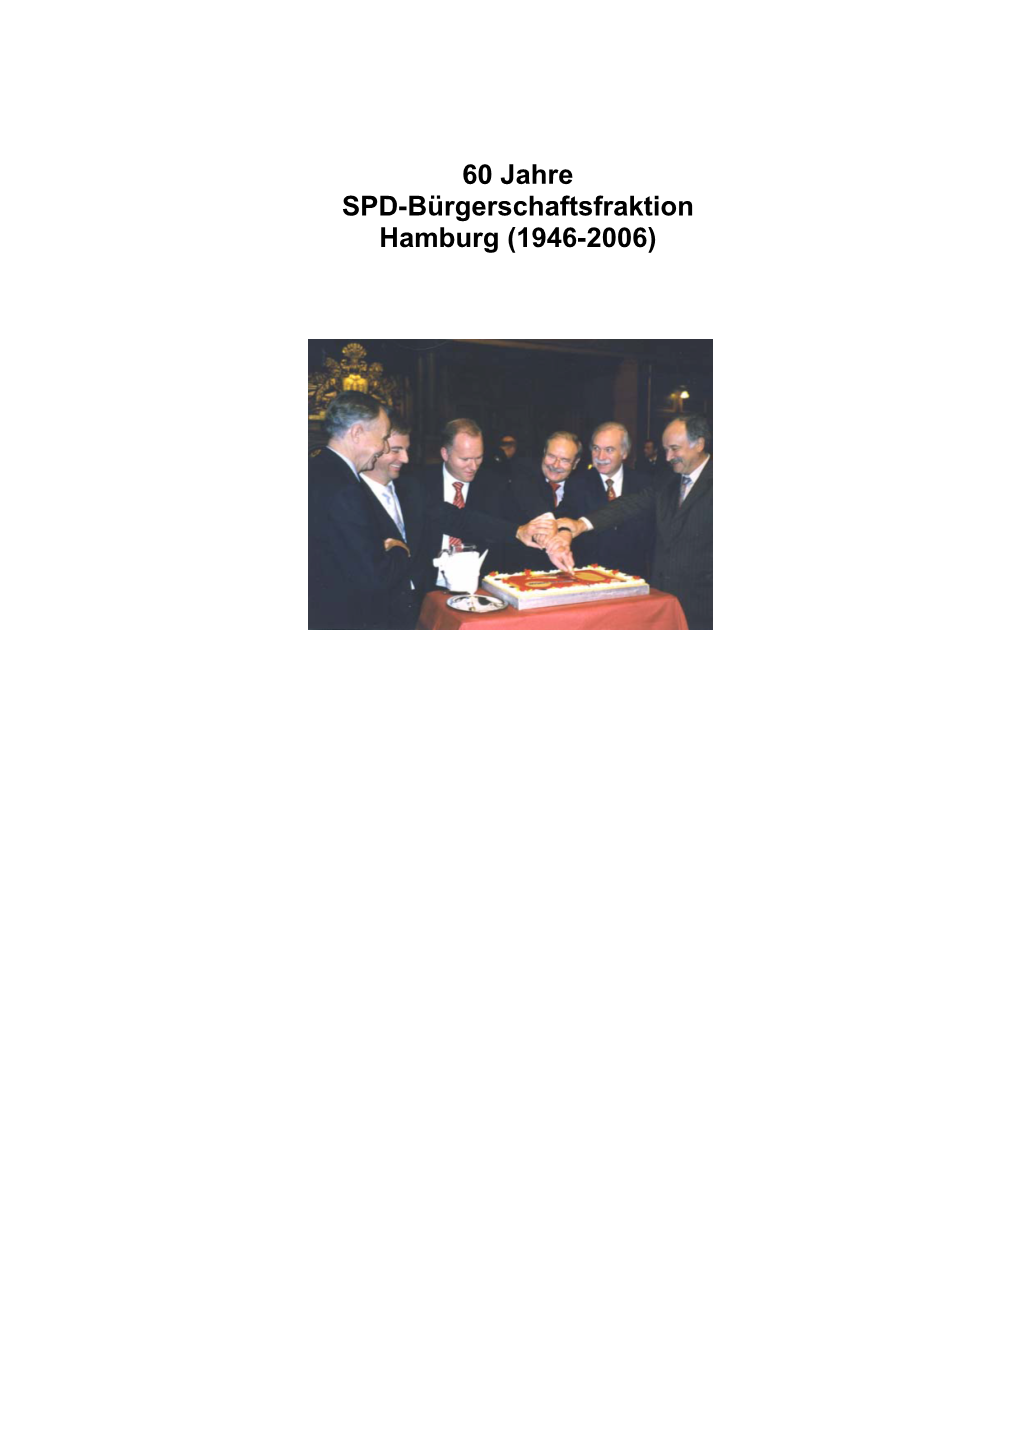 60 Jahre SPD-Bürgerschaftsfraktion Hamburg (1946-2006)